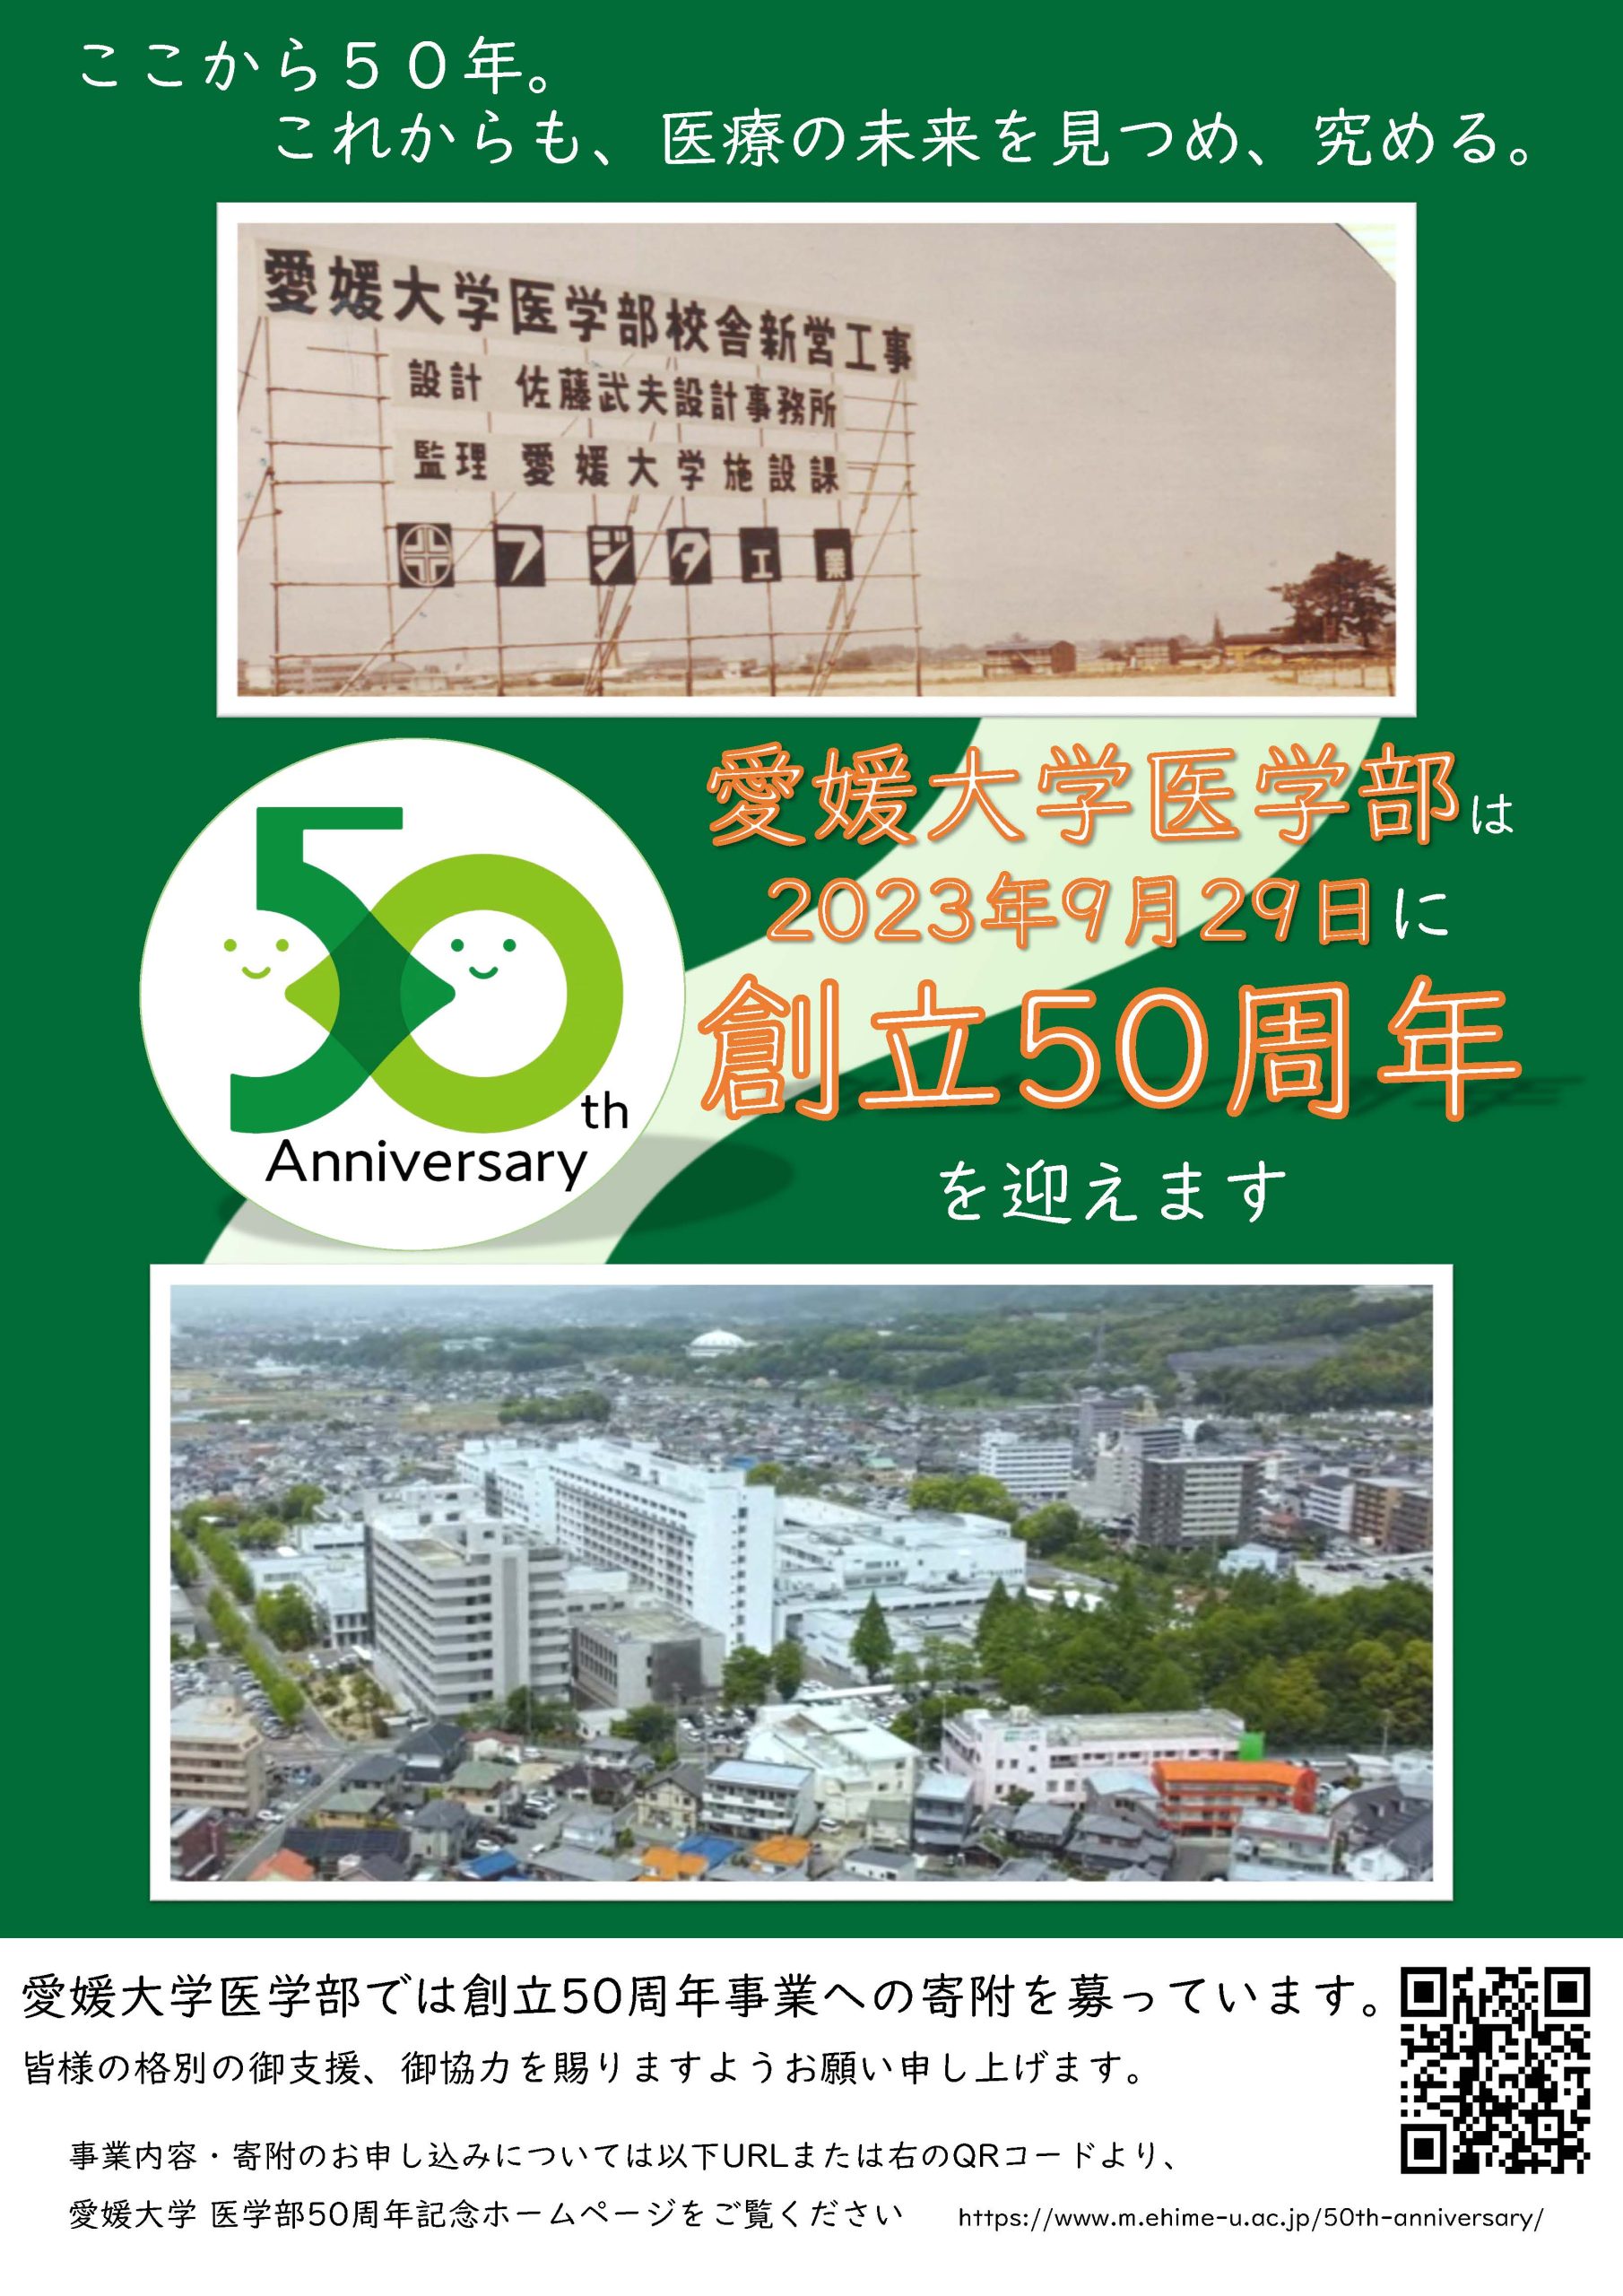 愛媛大学医学部創立50周年を記念するポスターが完成しました